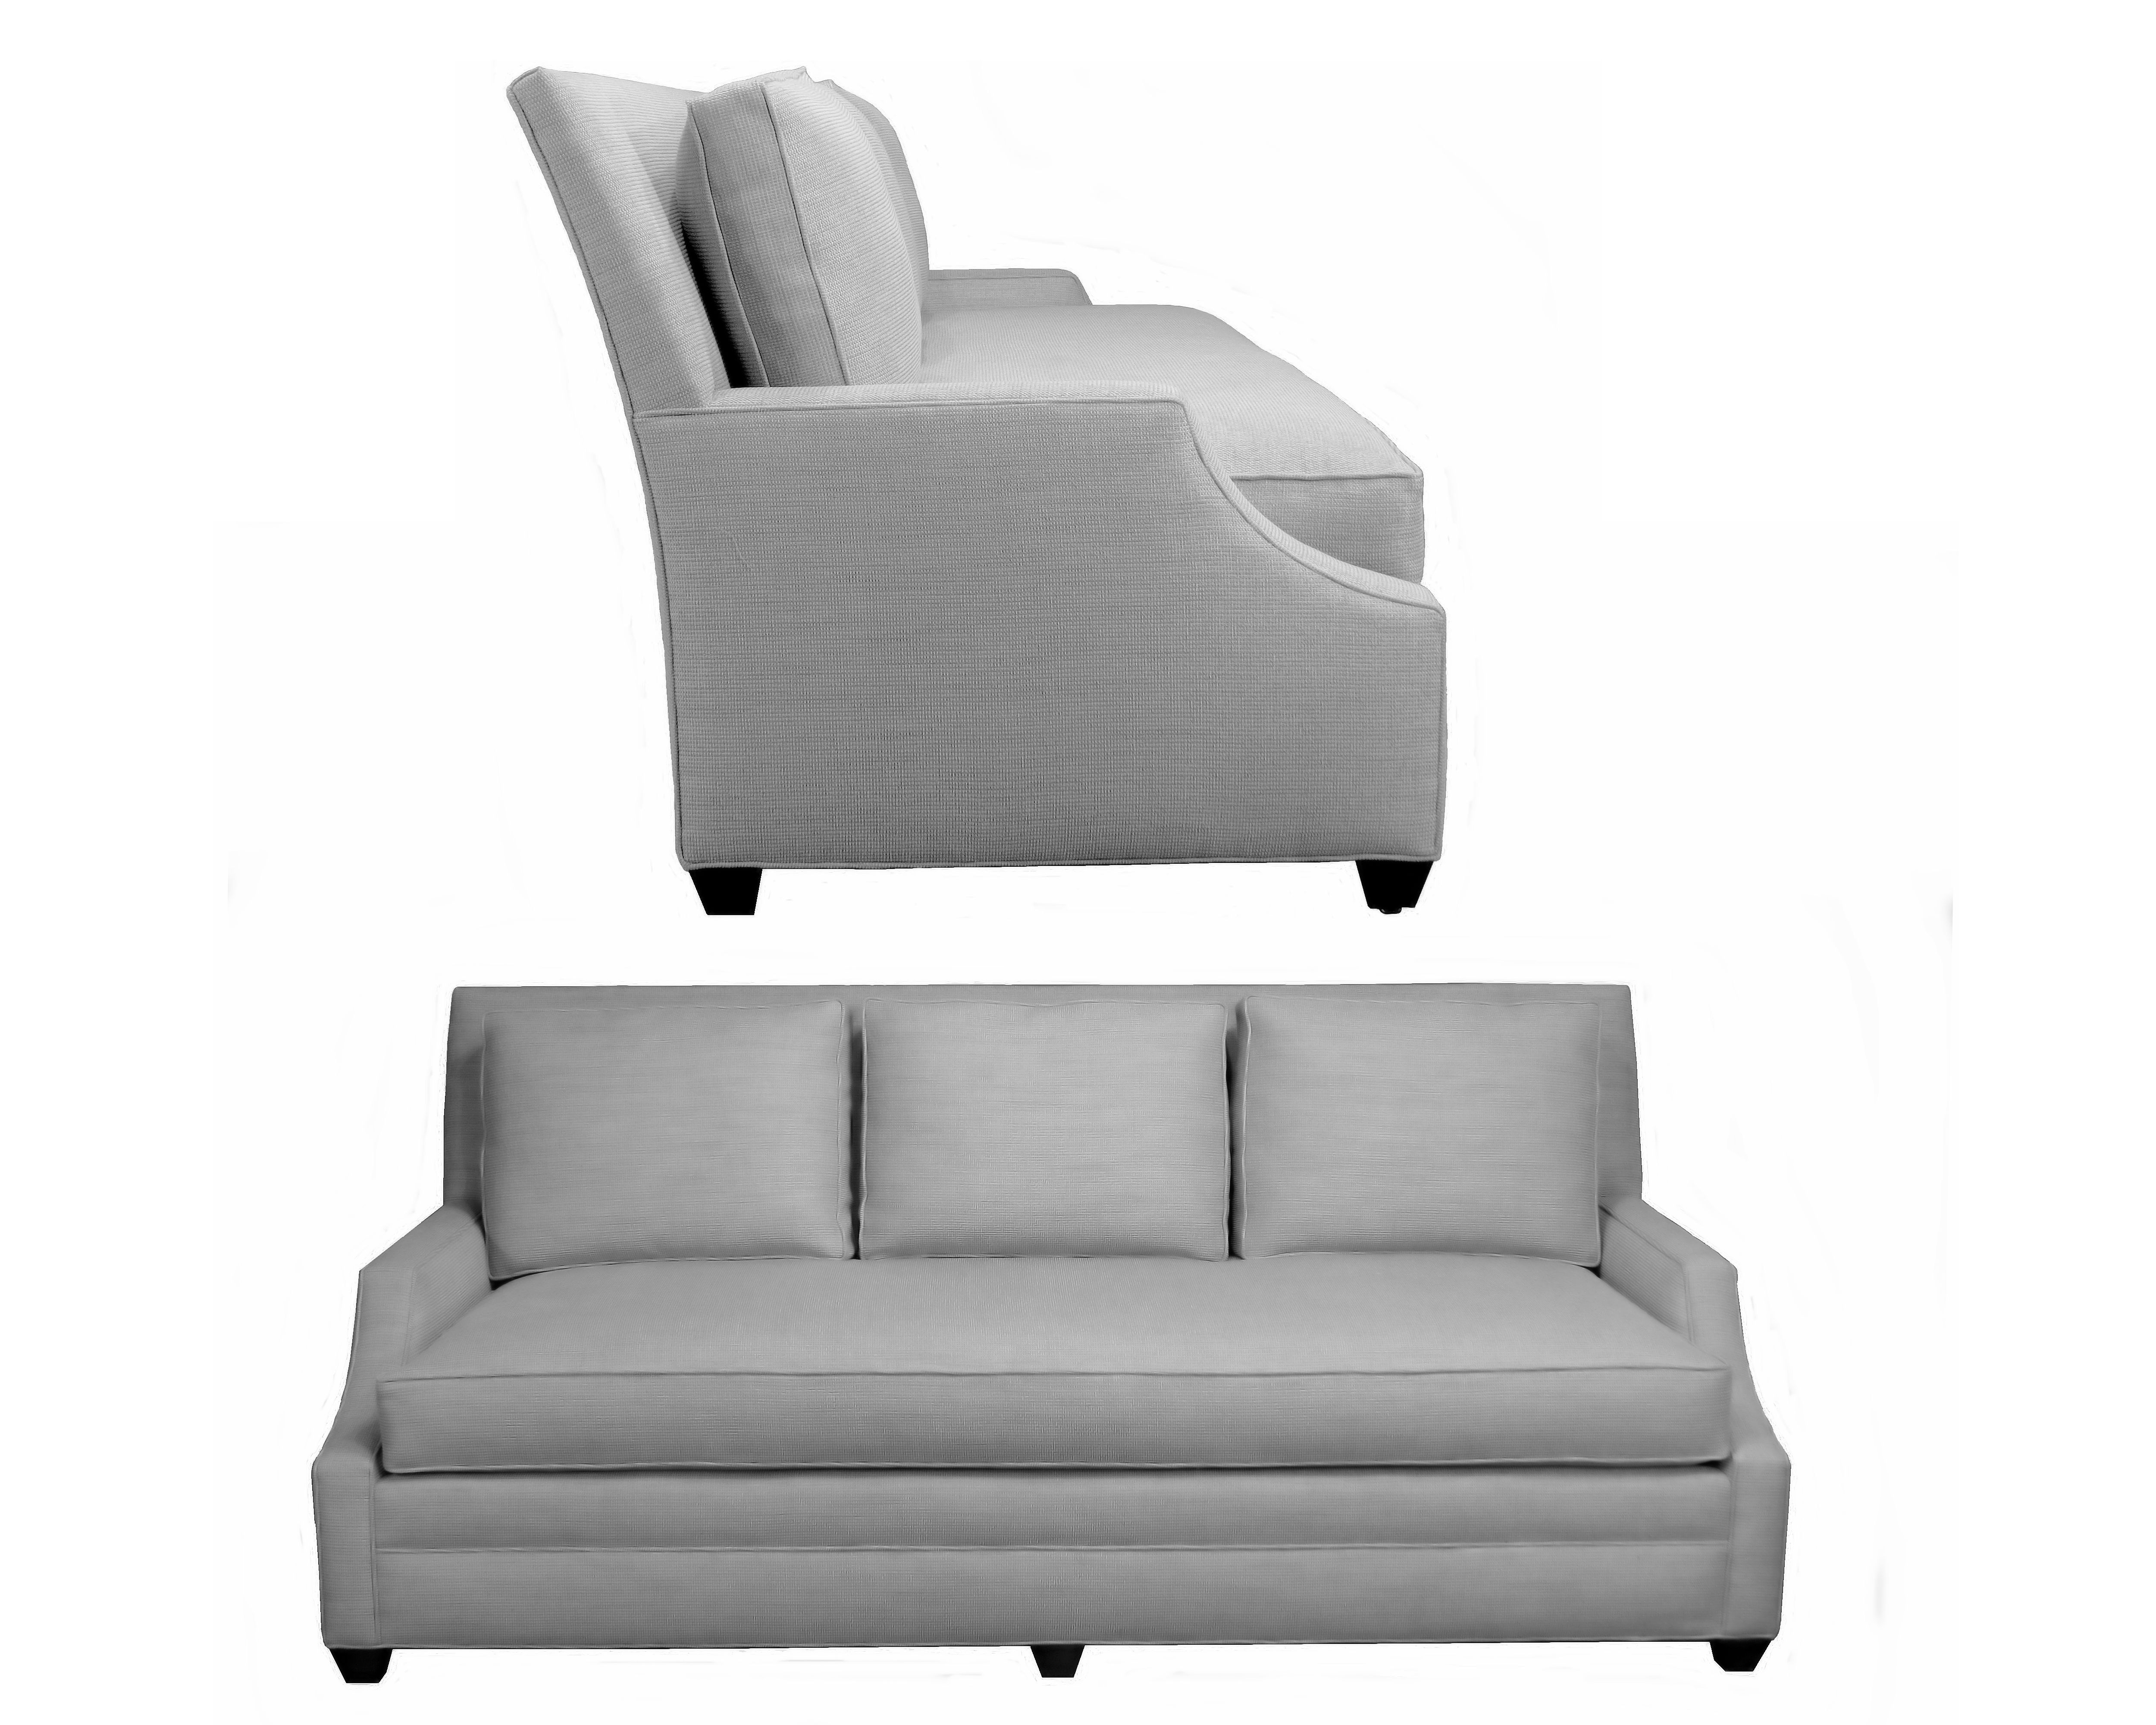 grayson sofa bed reviews